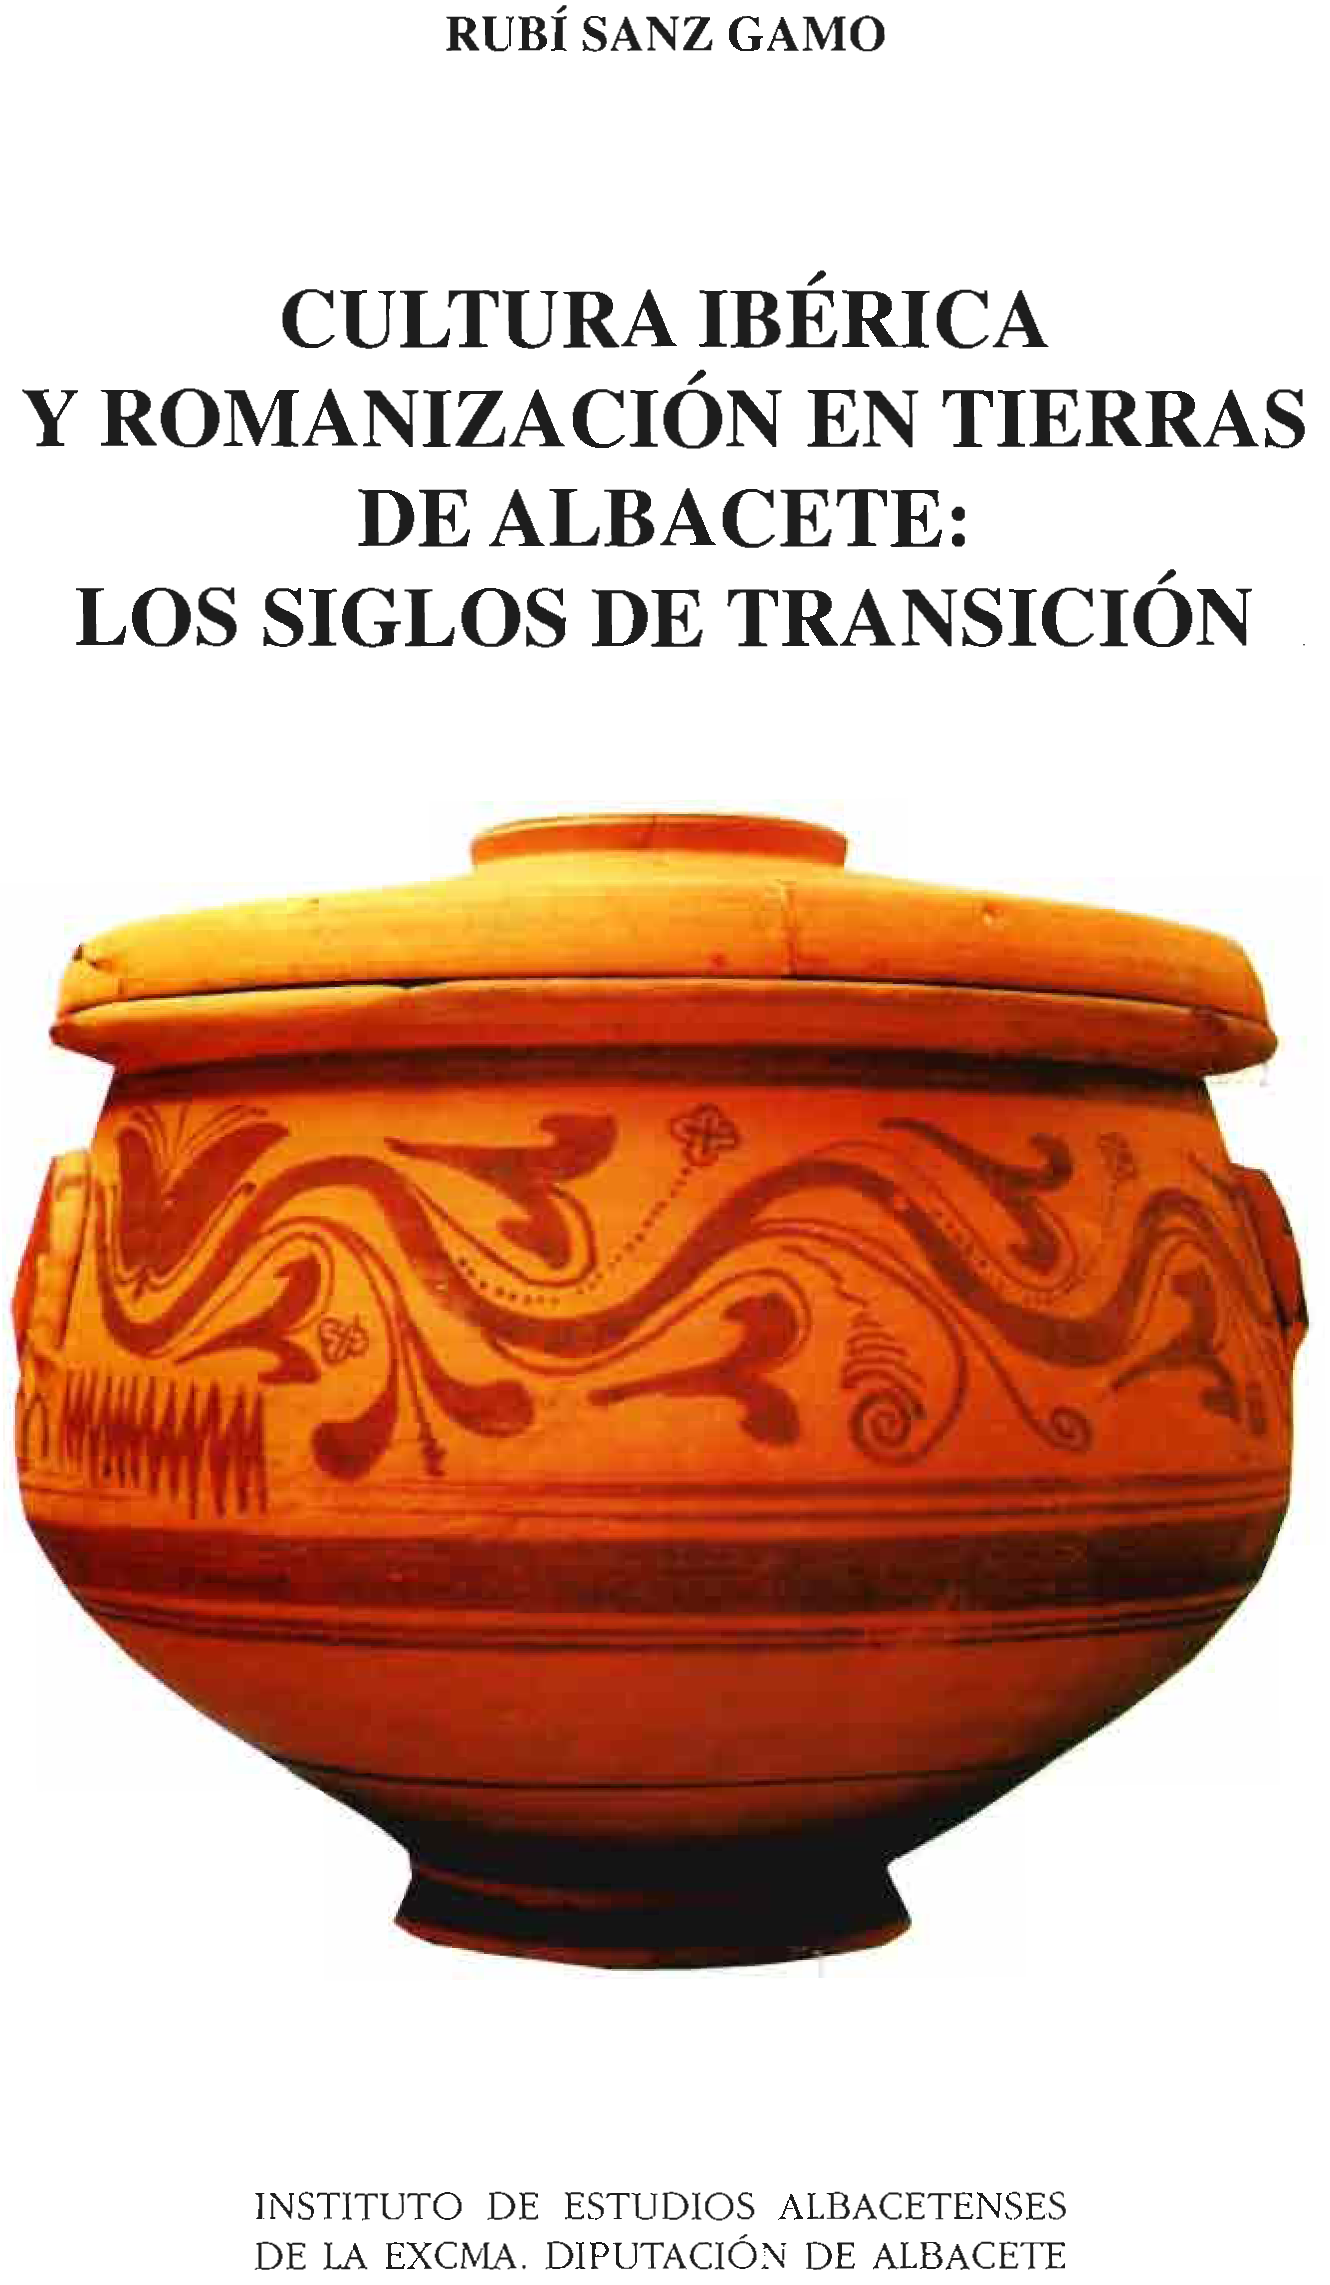 Imagen de portada del libro Cultura ibérica y romanización en tierras de Albacete